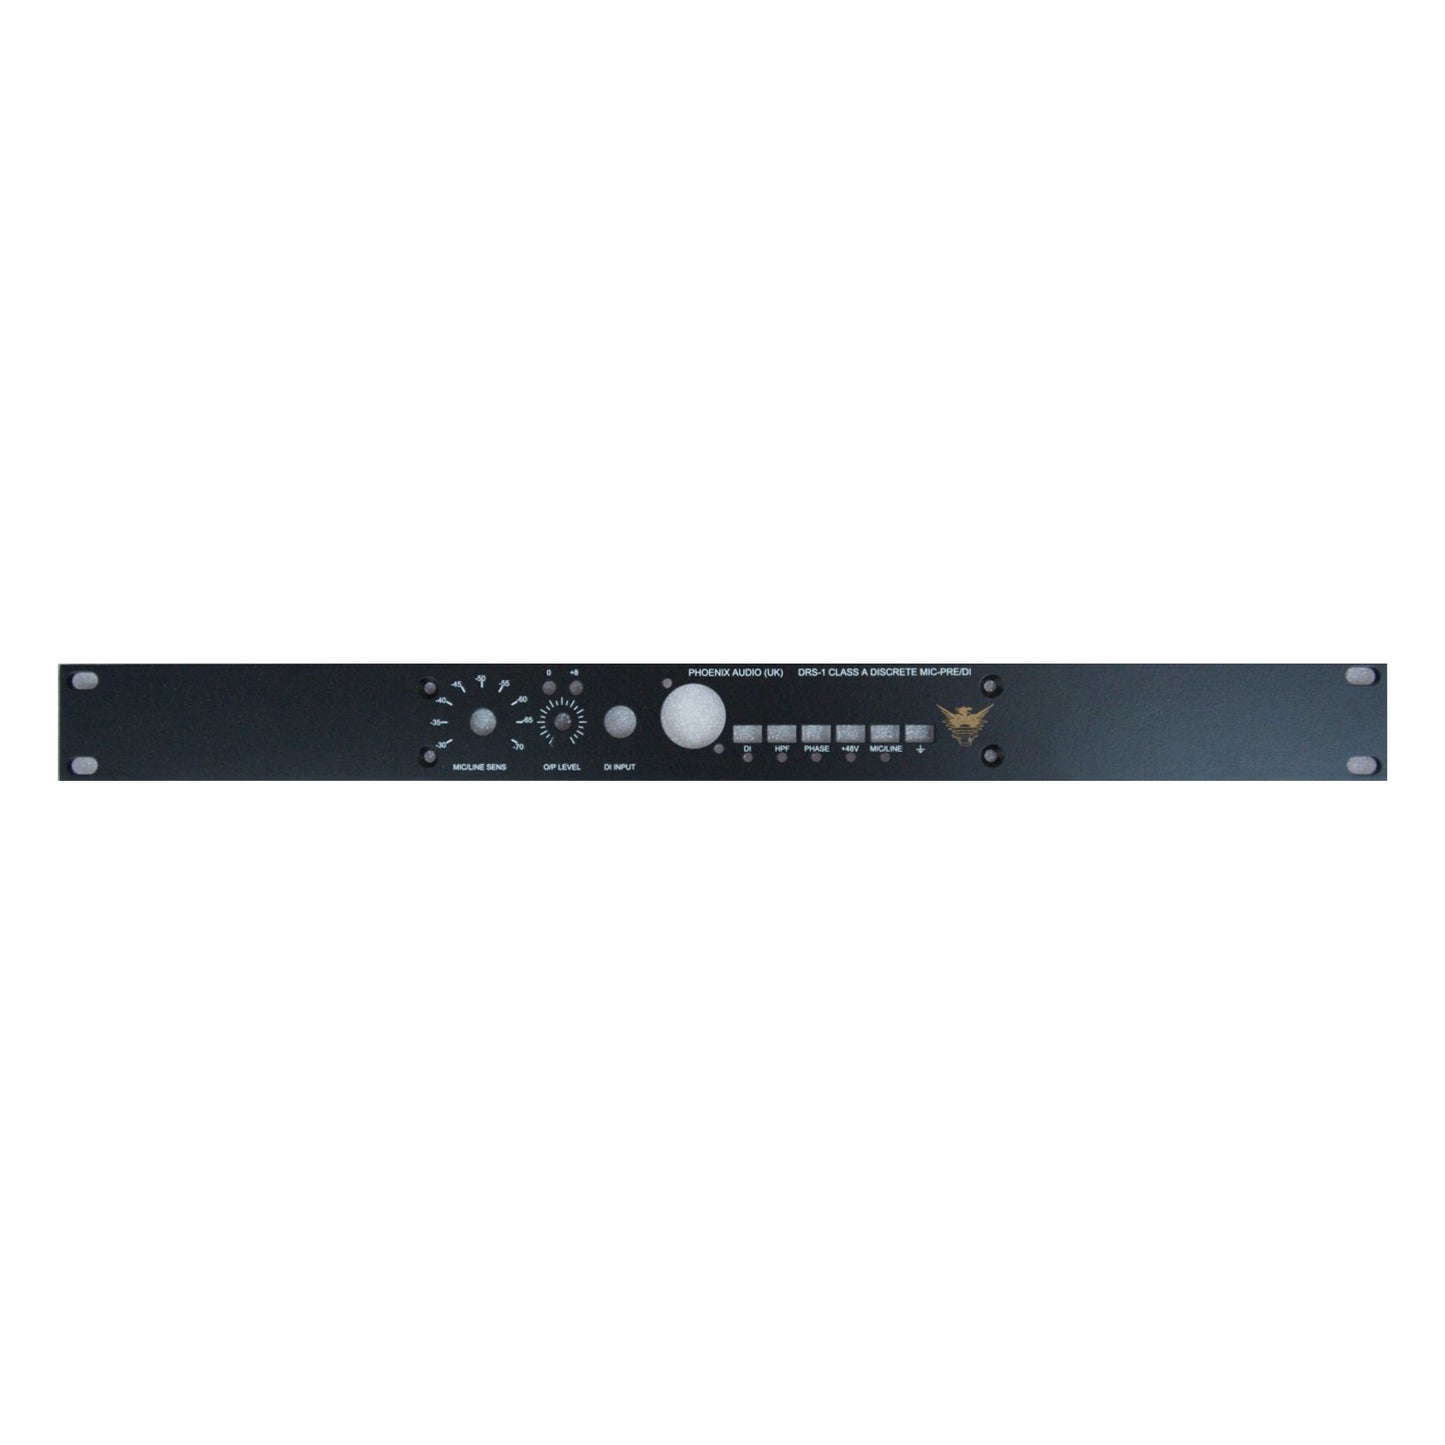 Phoenix Audio DRS1-RMP Rack panel for the DRS1